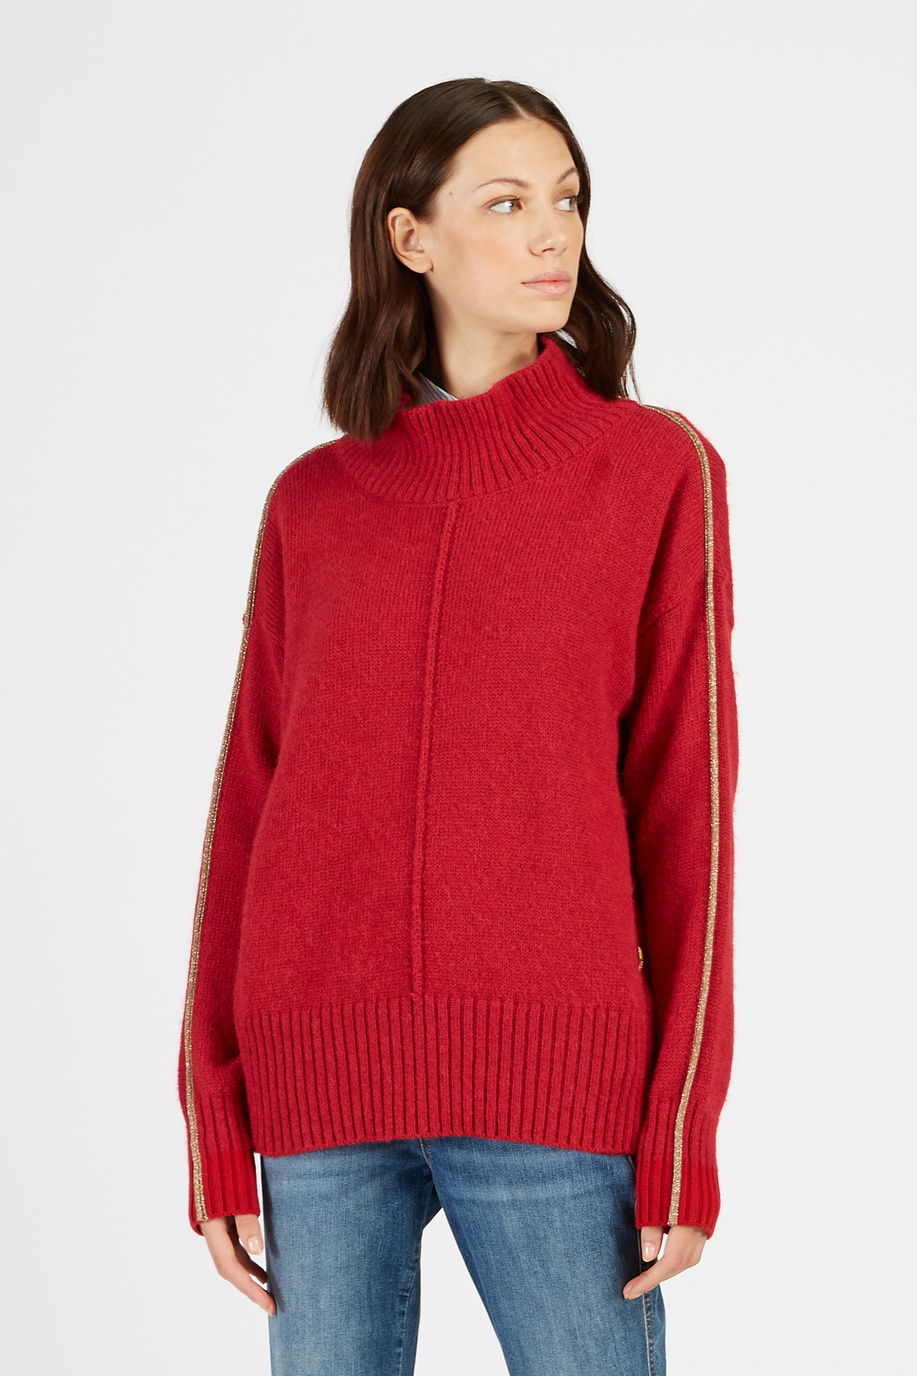 Maglia da donna collo alto in alpaca regular fit - Look eleganti per lei | La Martina - Official Online Shop